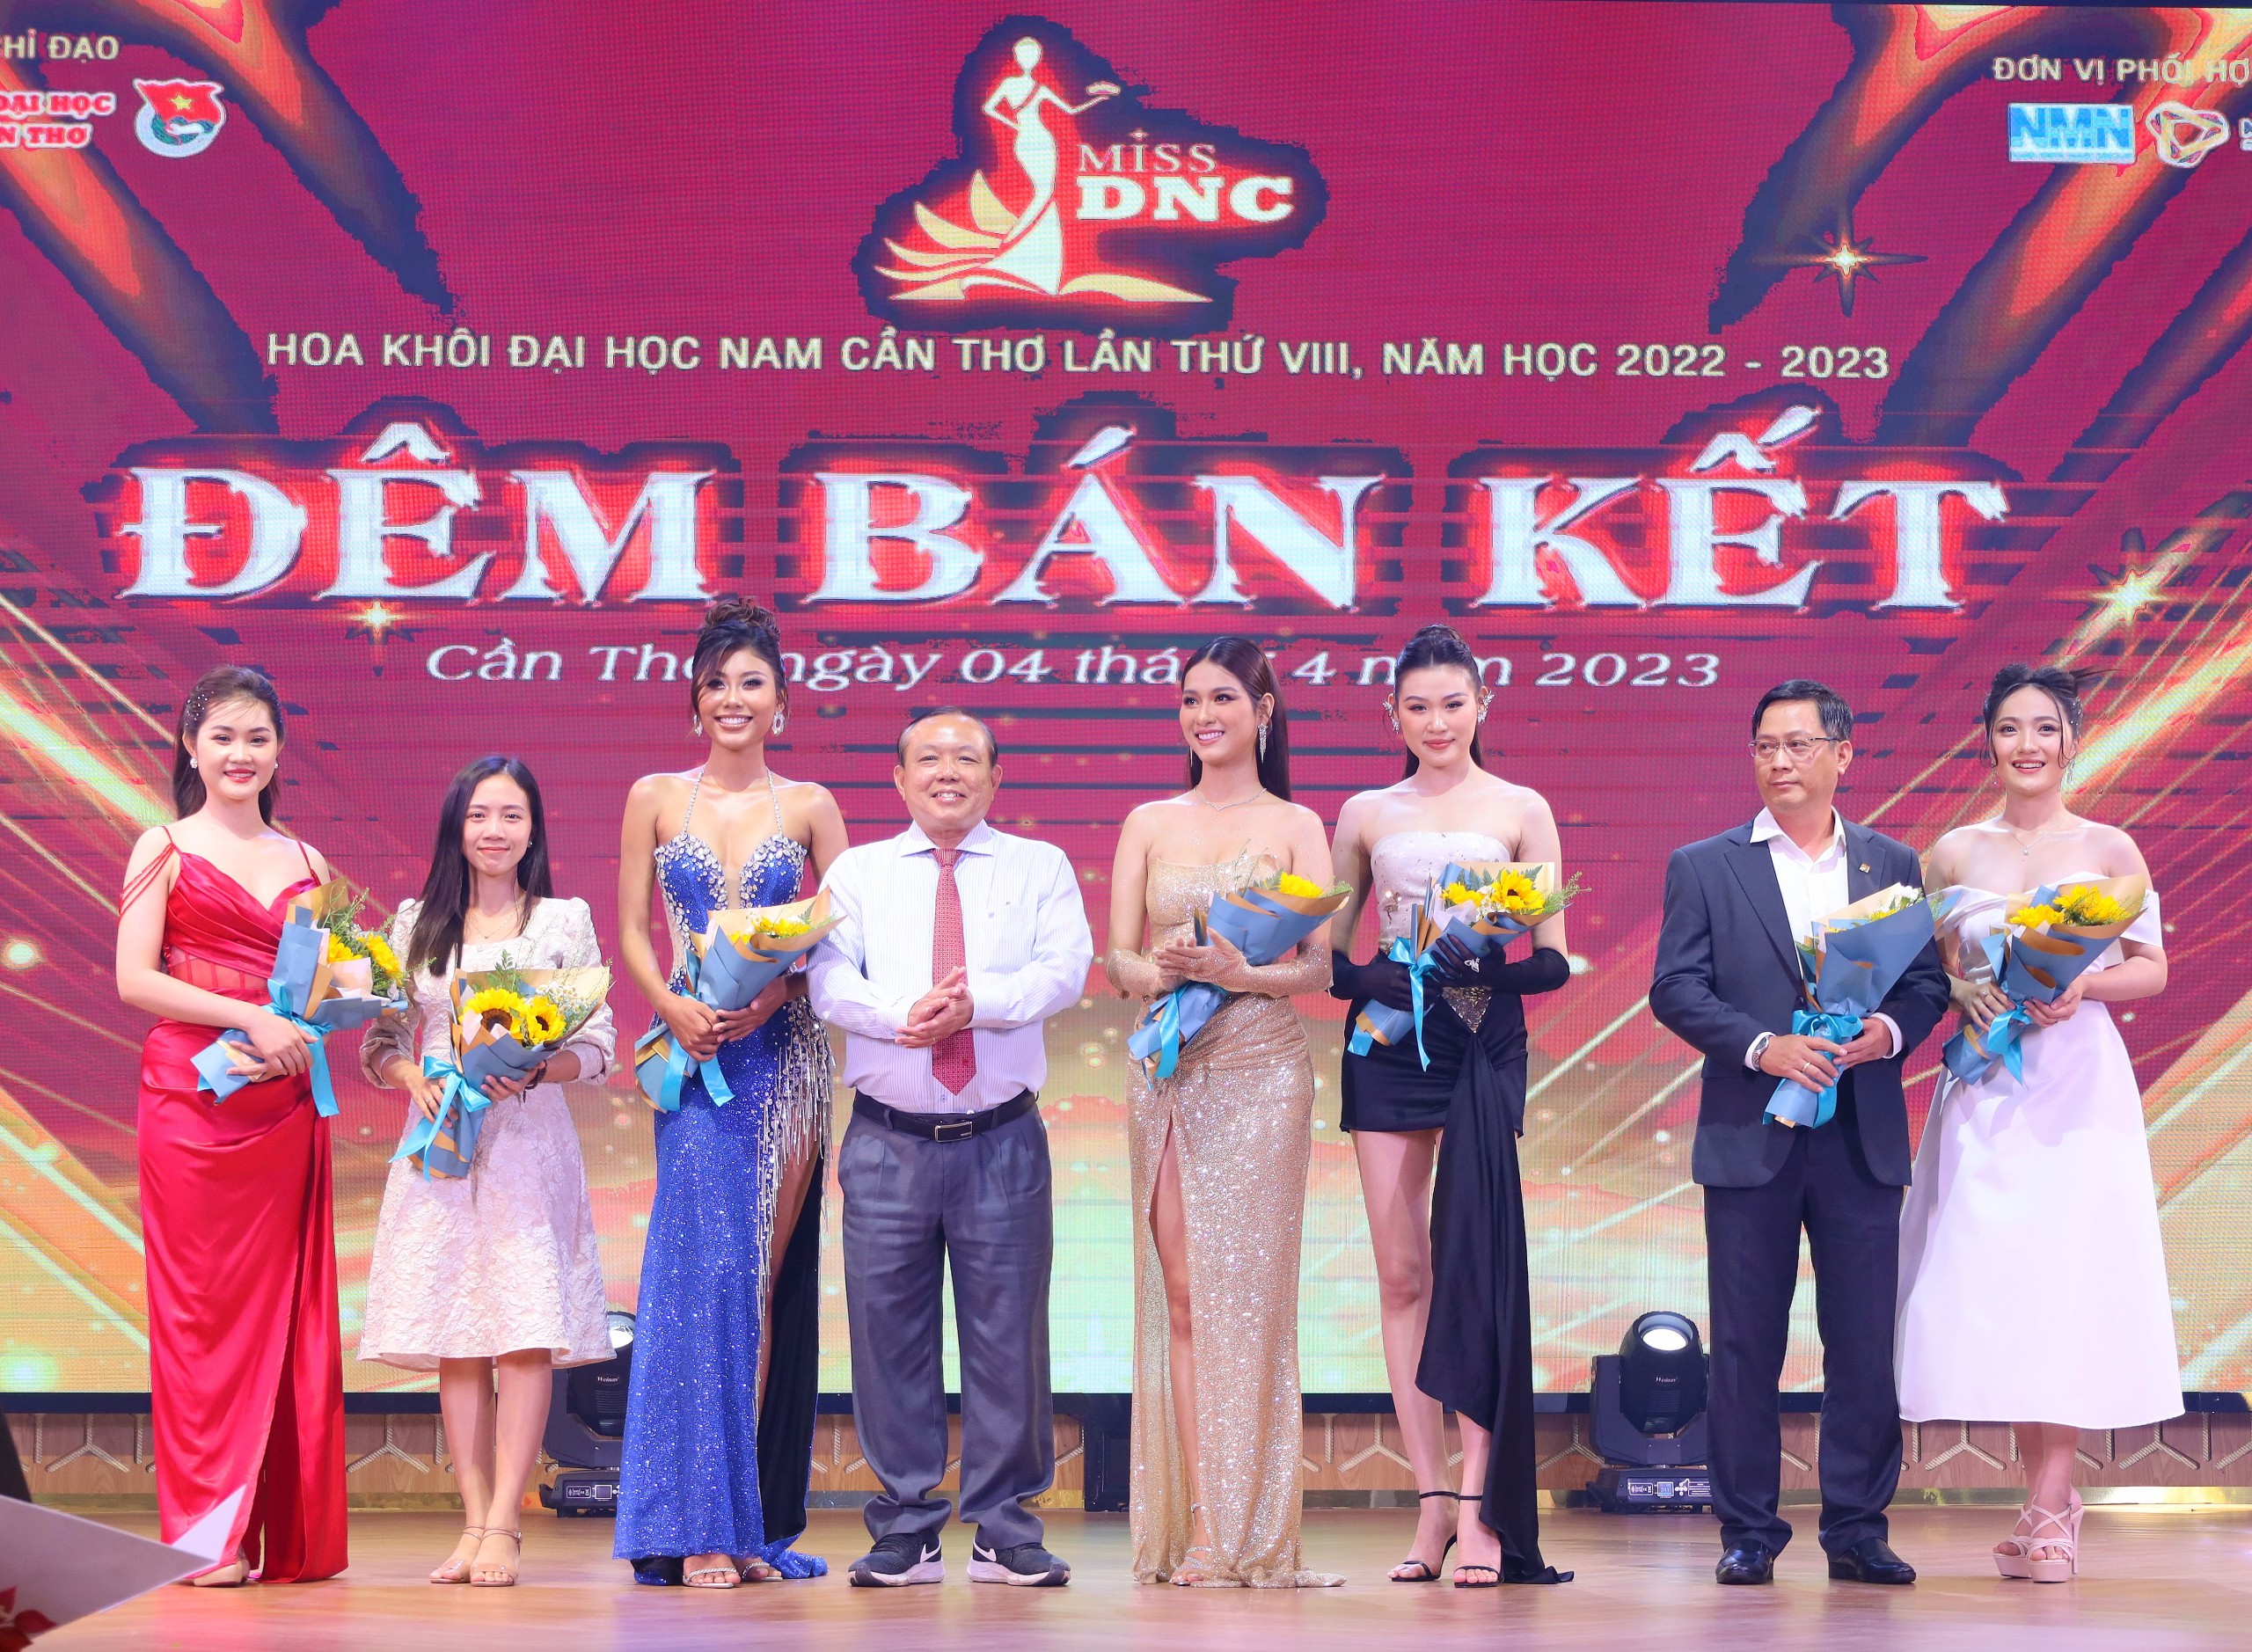 TS-LS. Nguyễn Tiến Dũng - Chủ tịch Hội đồng Trường Đại học Nam Cần Thơ tặng hoa cho ban giám khảo.